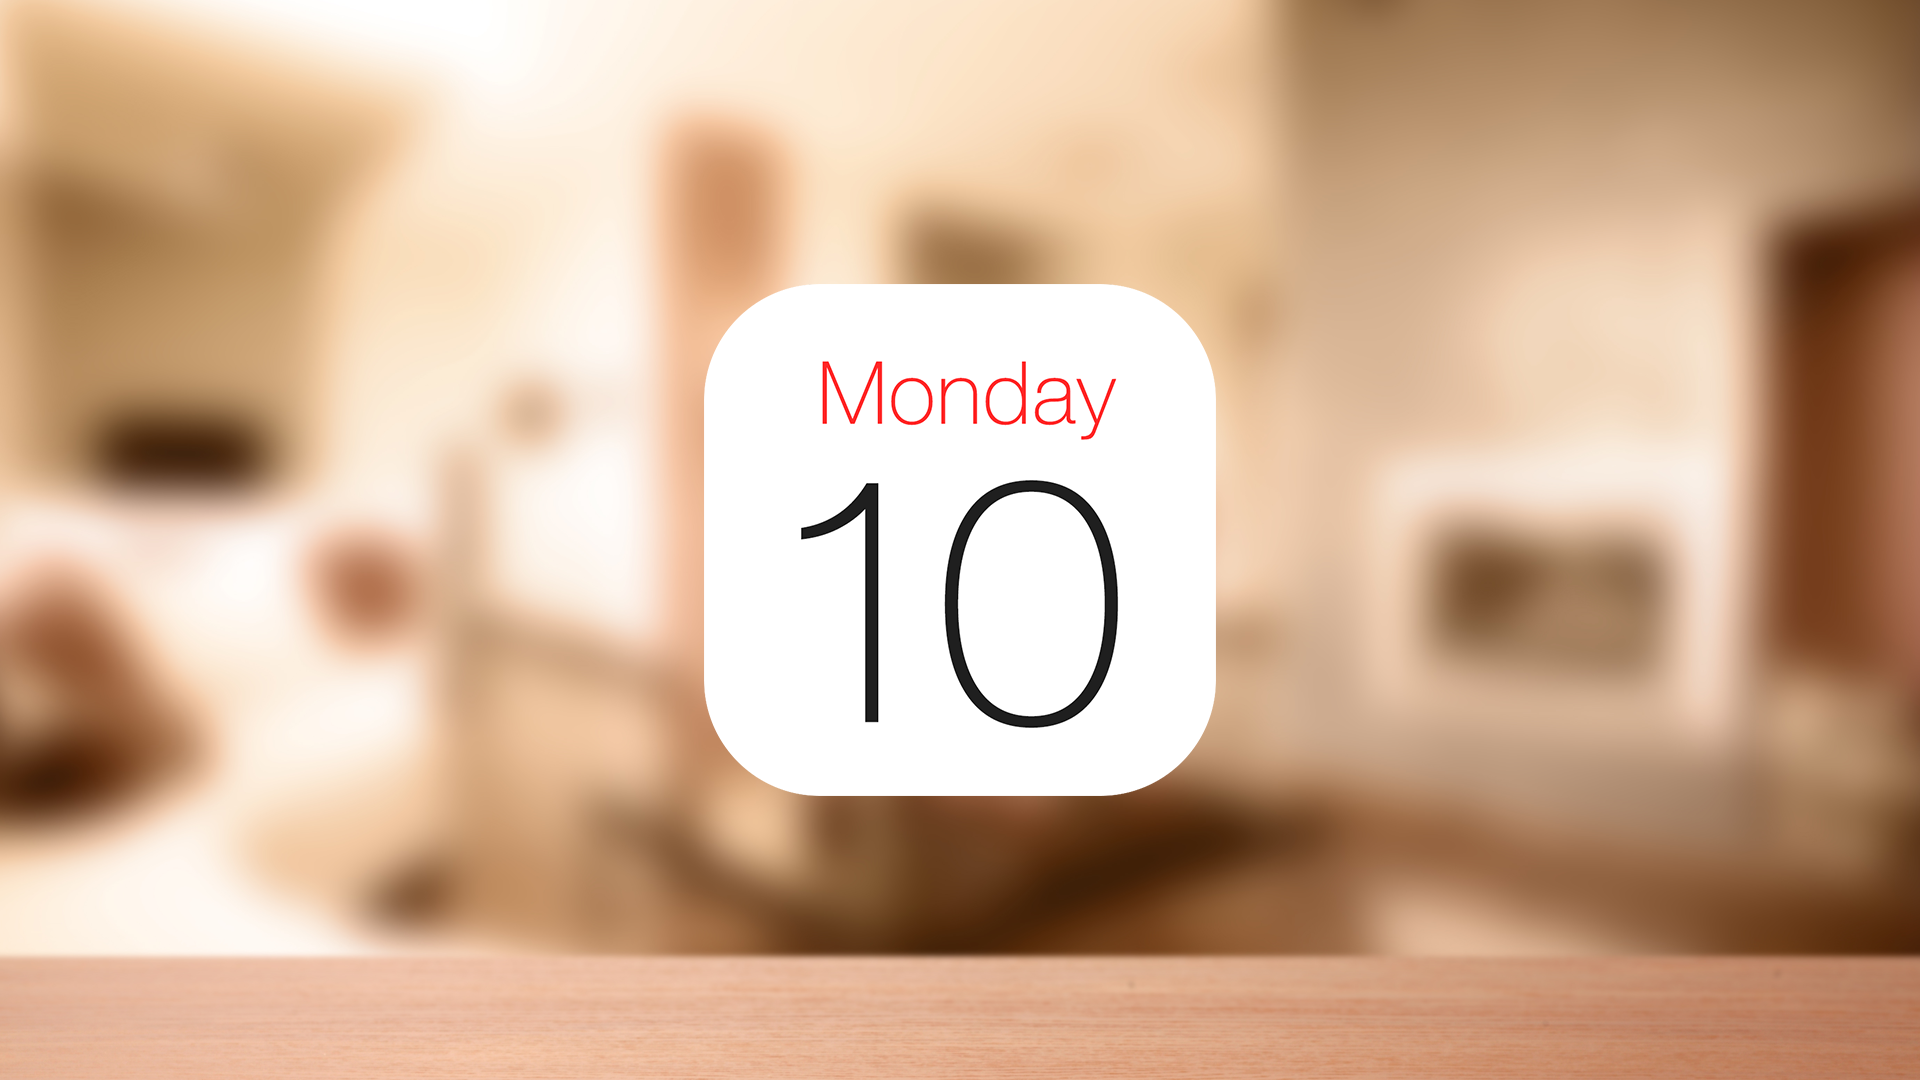 Iphoneの標準カレンダーに大安 仏滅など 六曜を表示させる方法